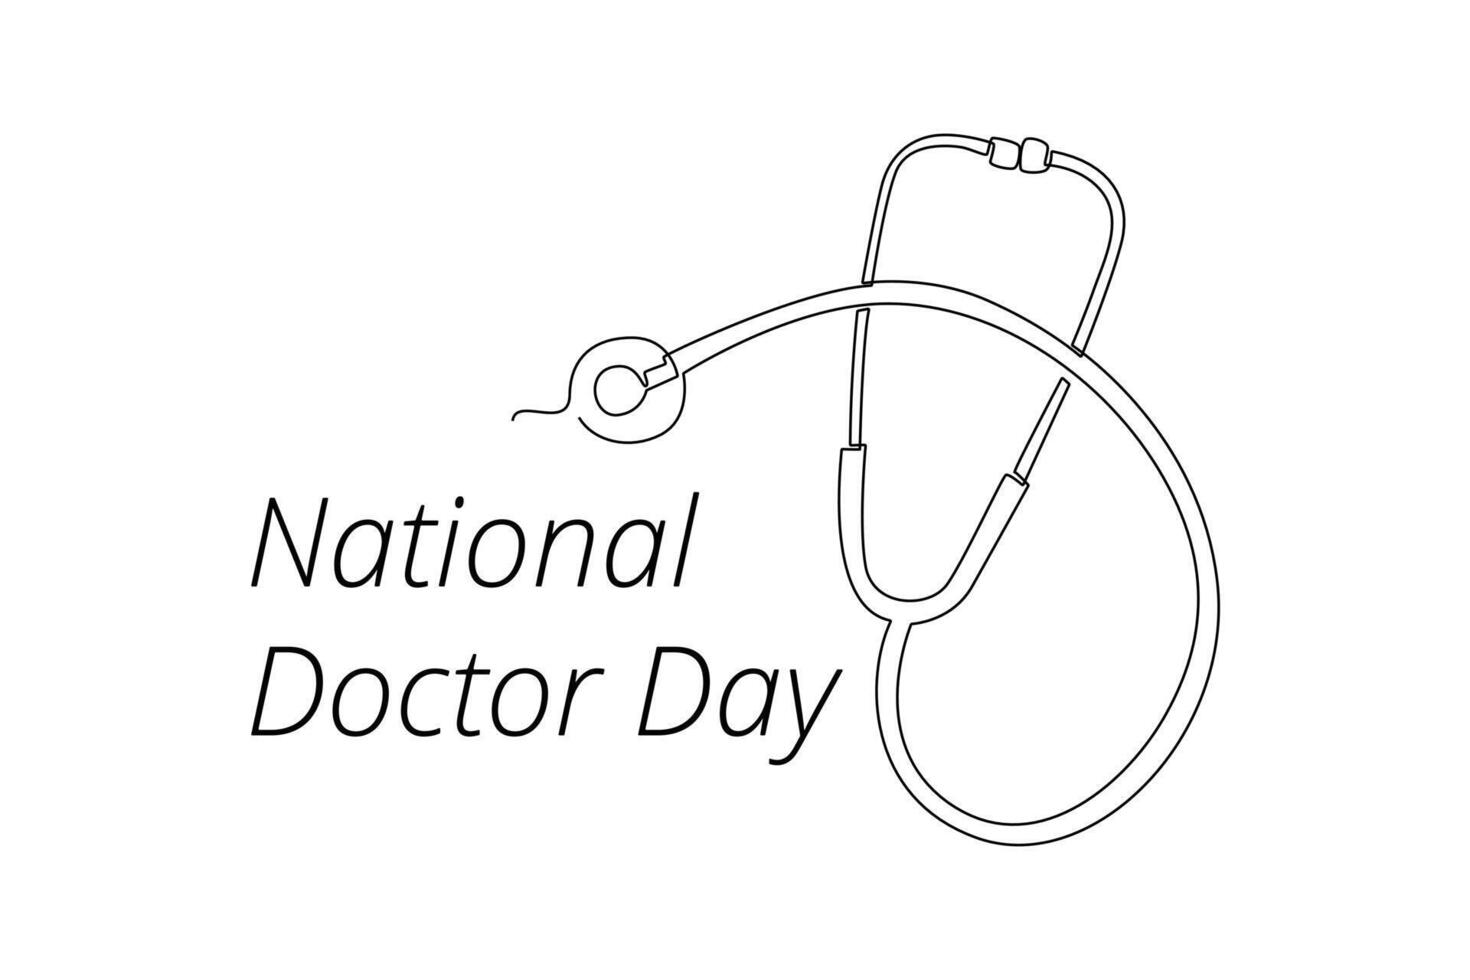 einer kontinuierlich Linie Zeichnung von National Ärzte Tag Konzept. Gekritzel Vektor Illustration im einfach linear Stil.